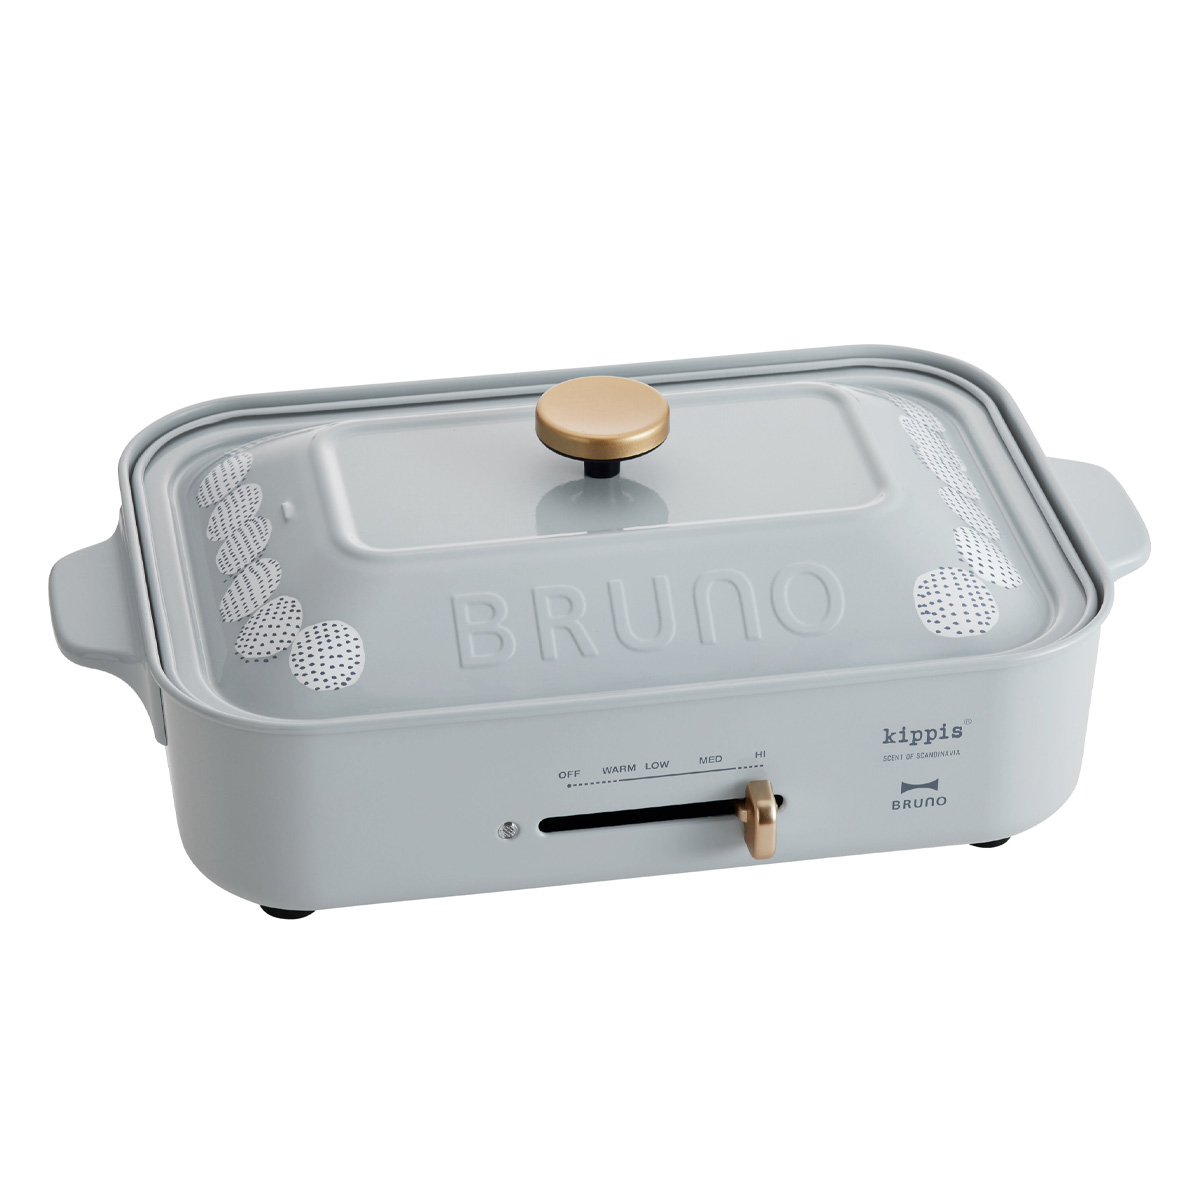 ブルーノ キッピス ホットプレート 限定カラー BOE082 BRUNO kippis コンパクトホットプレート パンケーキプレート キッチン家電  電気プレート